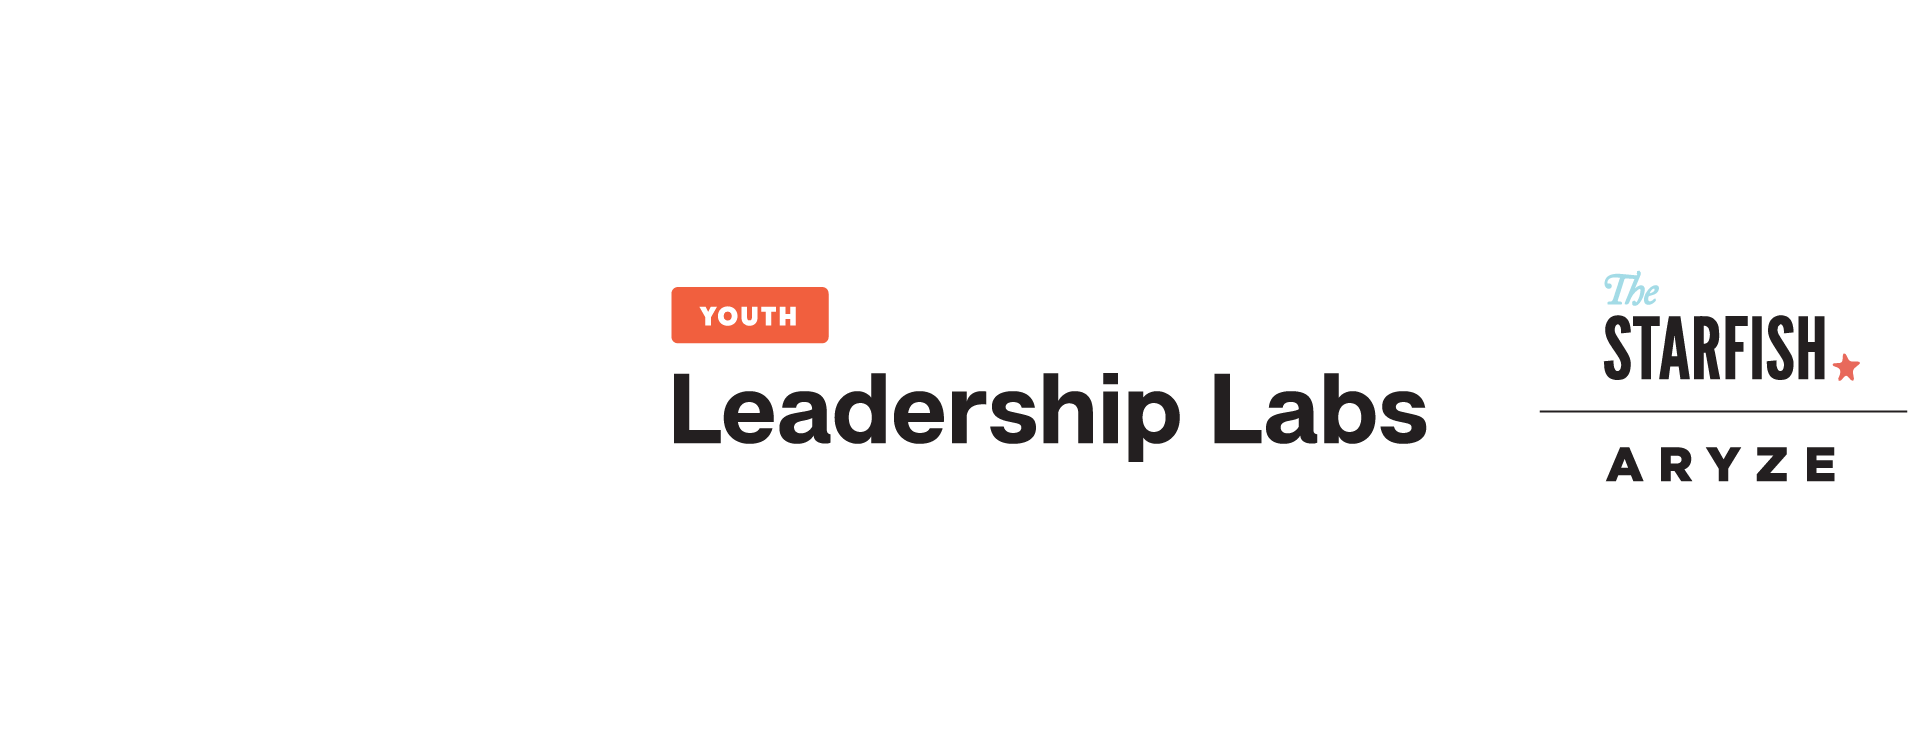 Youth Leadership Labs Logo Header-01-01.png